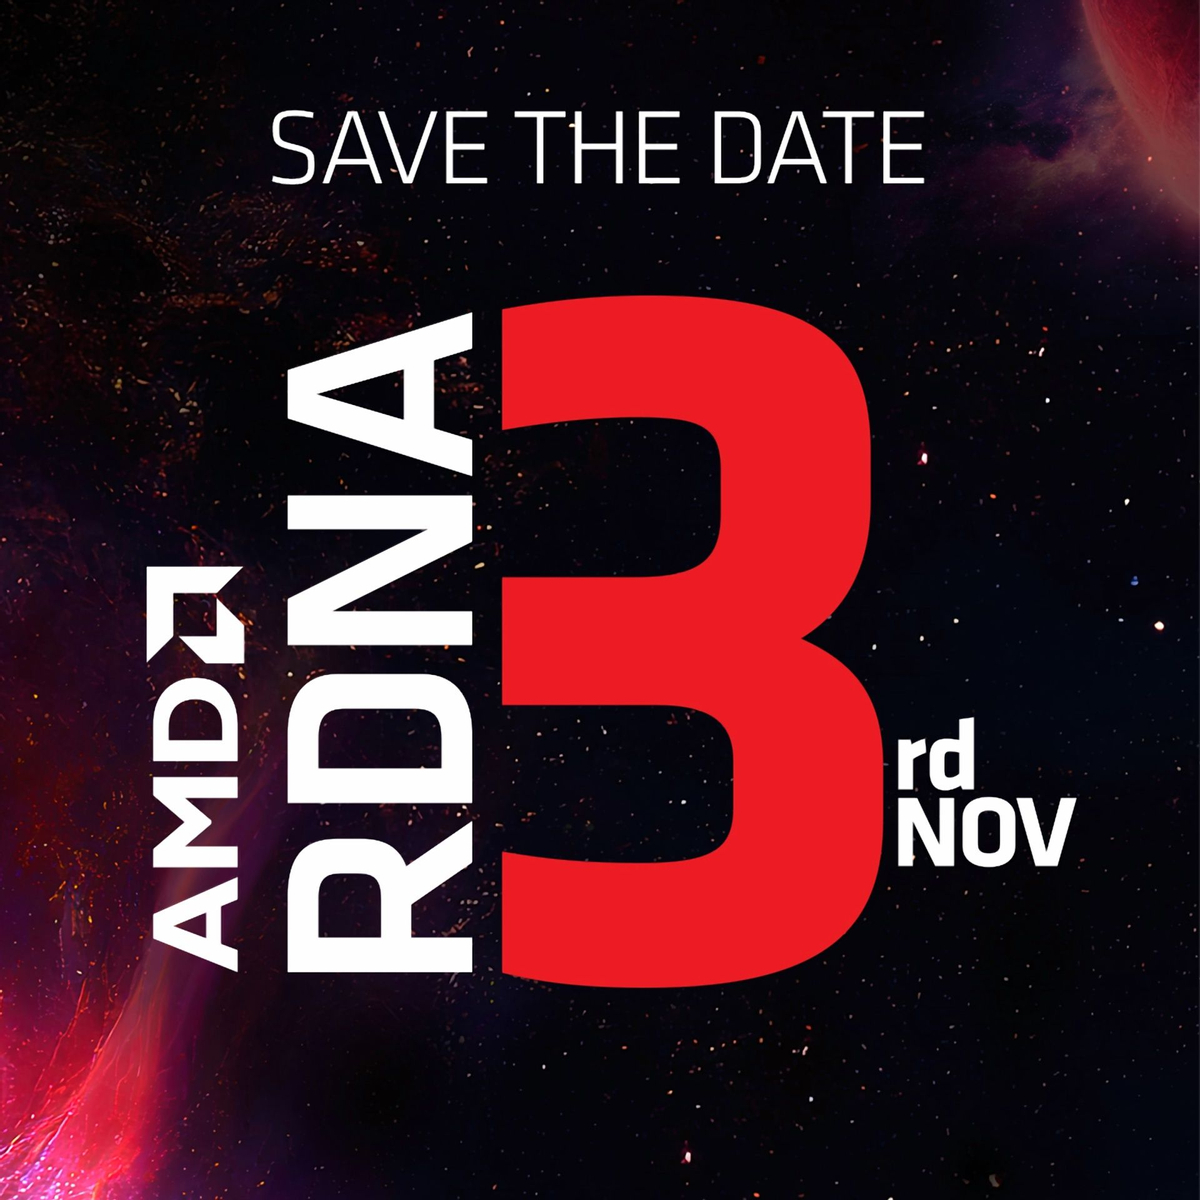 Возможно флагманская видеокарта AMD Radeon на RDNA 3 будет называться RX 7900 XTX